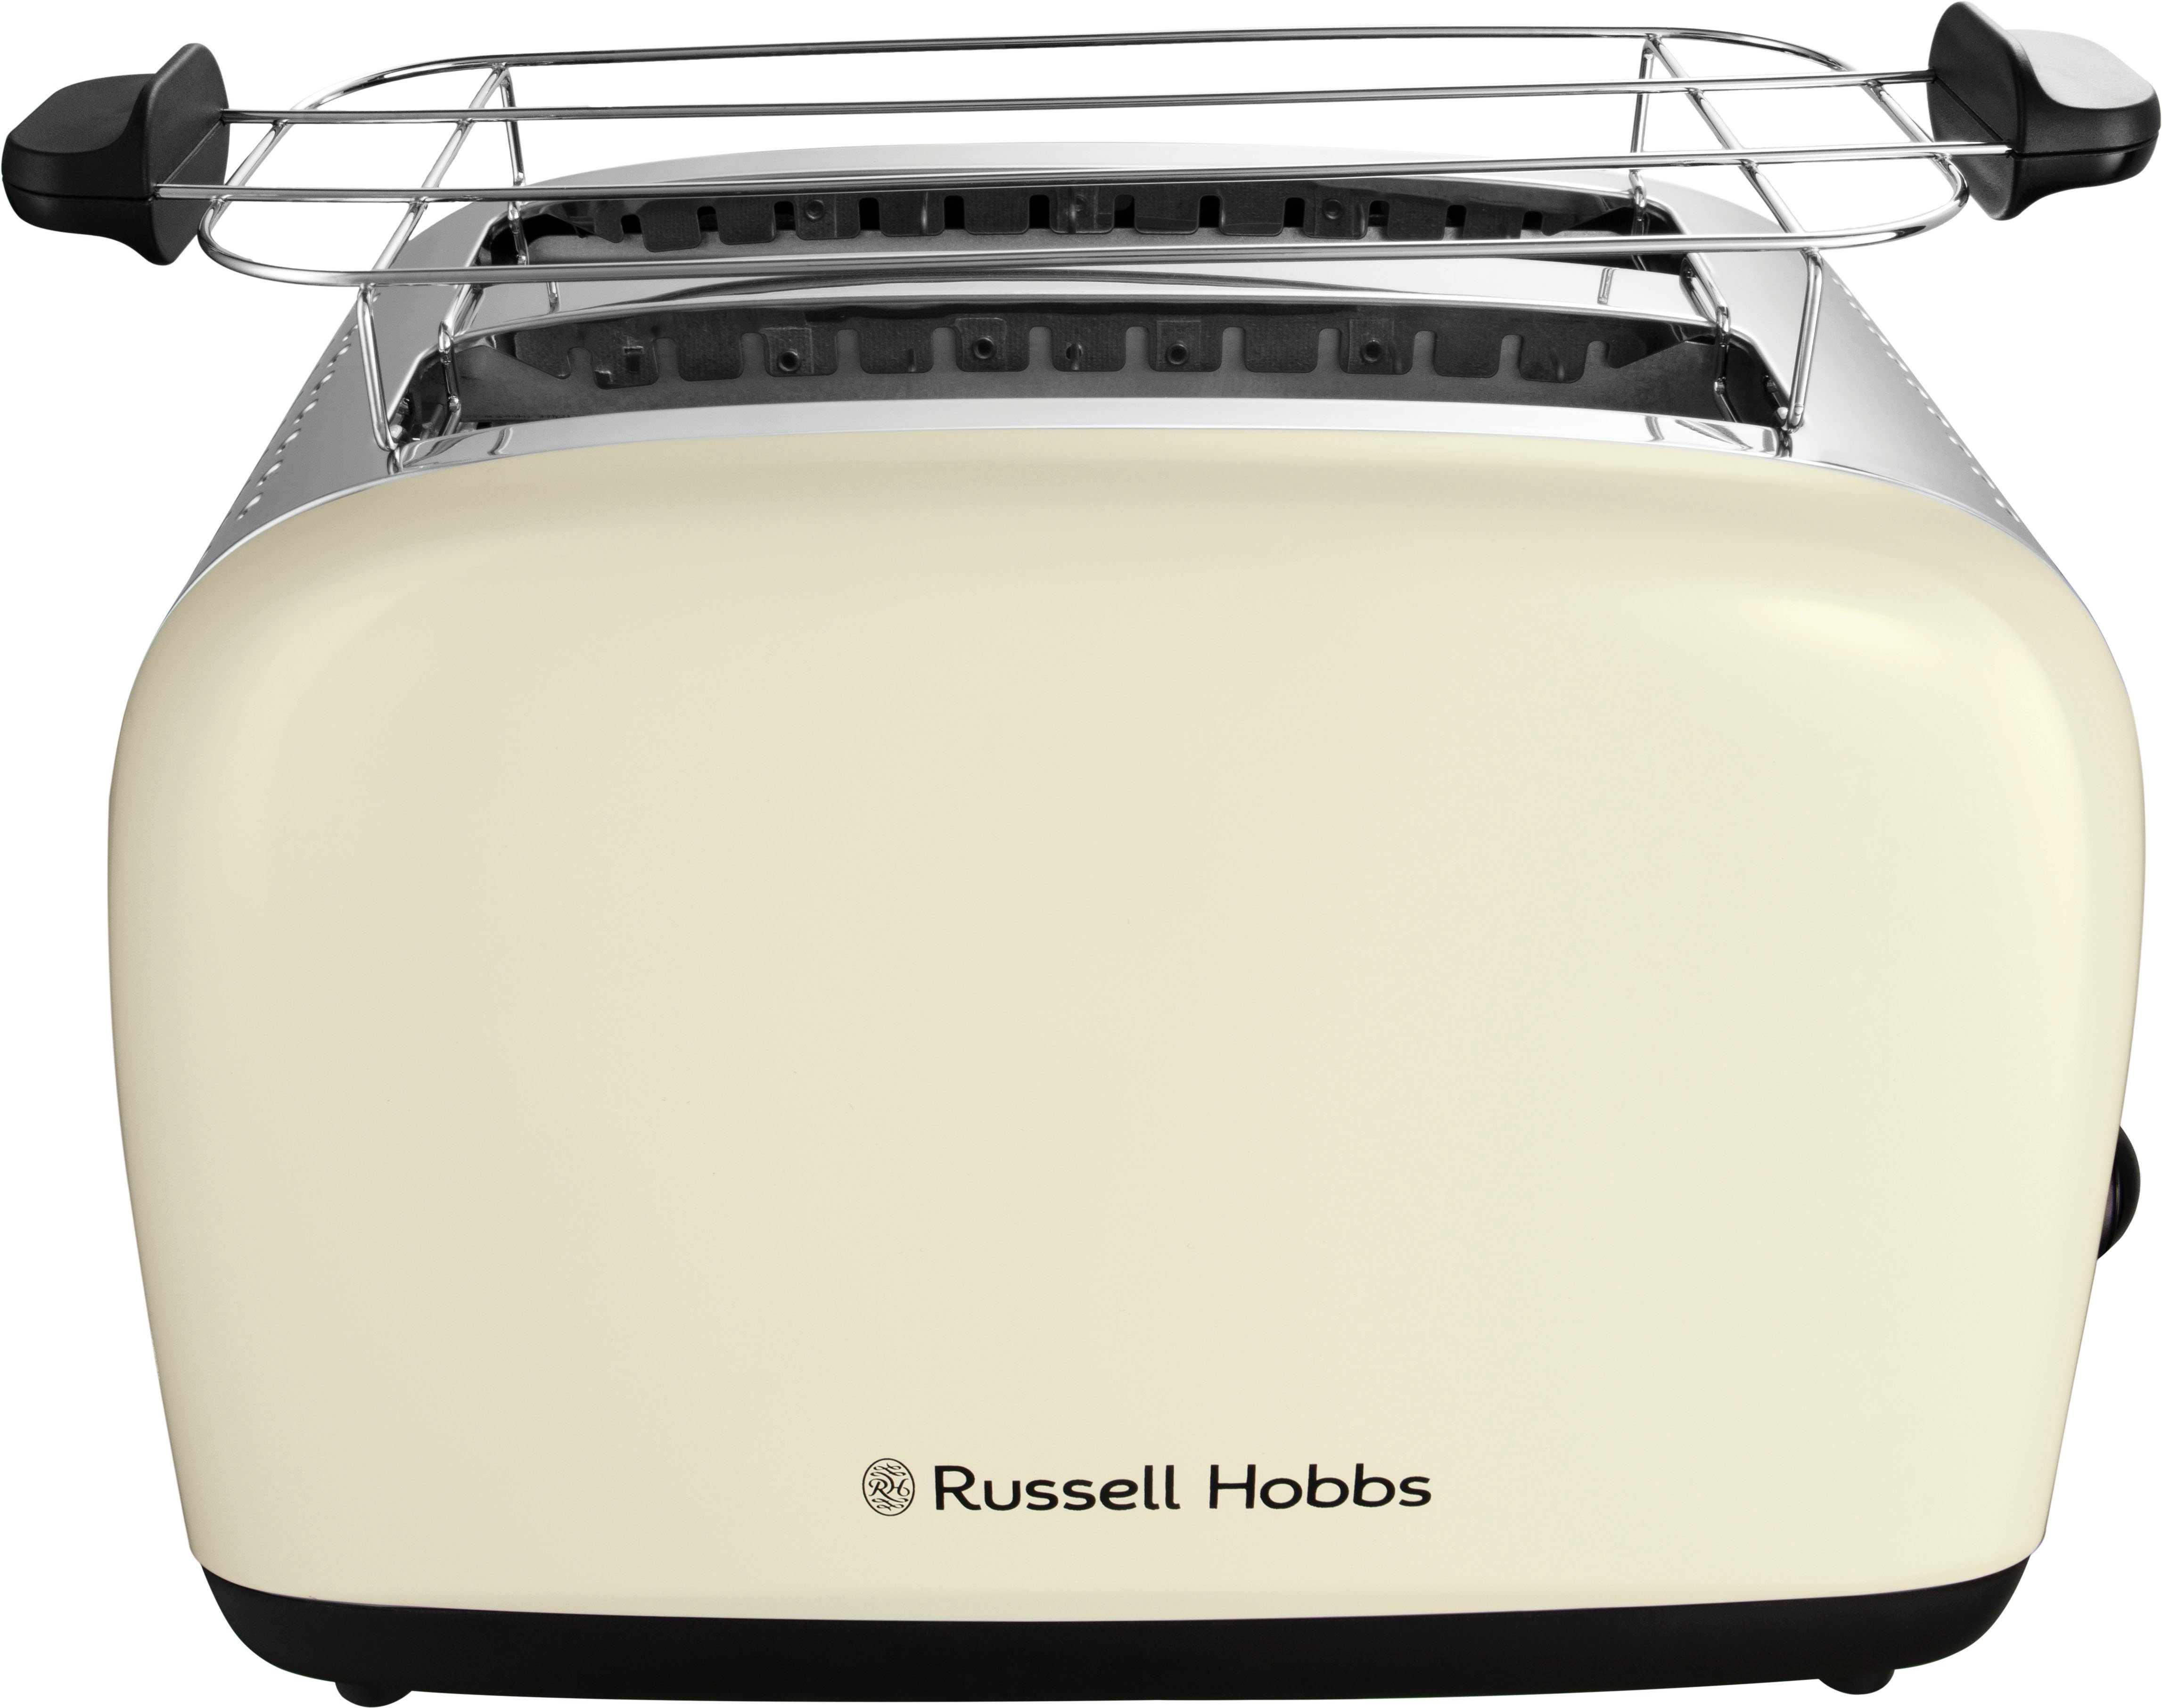 26551-56, Toaster RUSSELL 2 HOBBS Colours lange W Scheiben, 2 Plus Schlitze, 1600 für